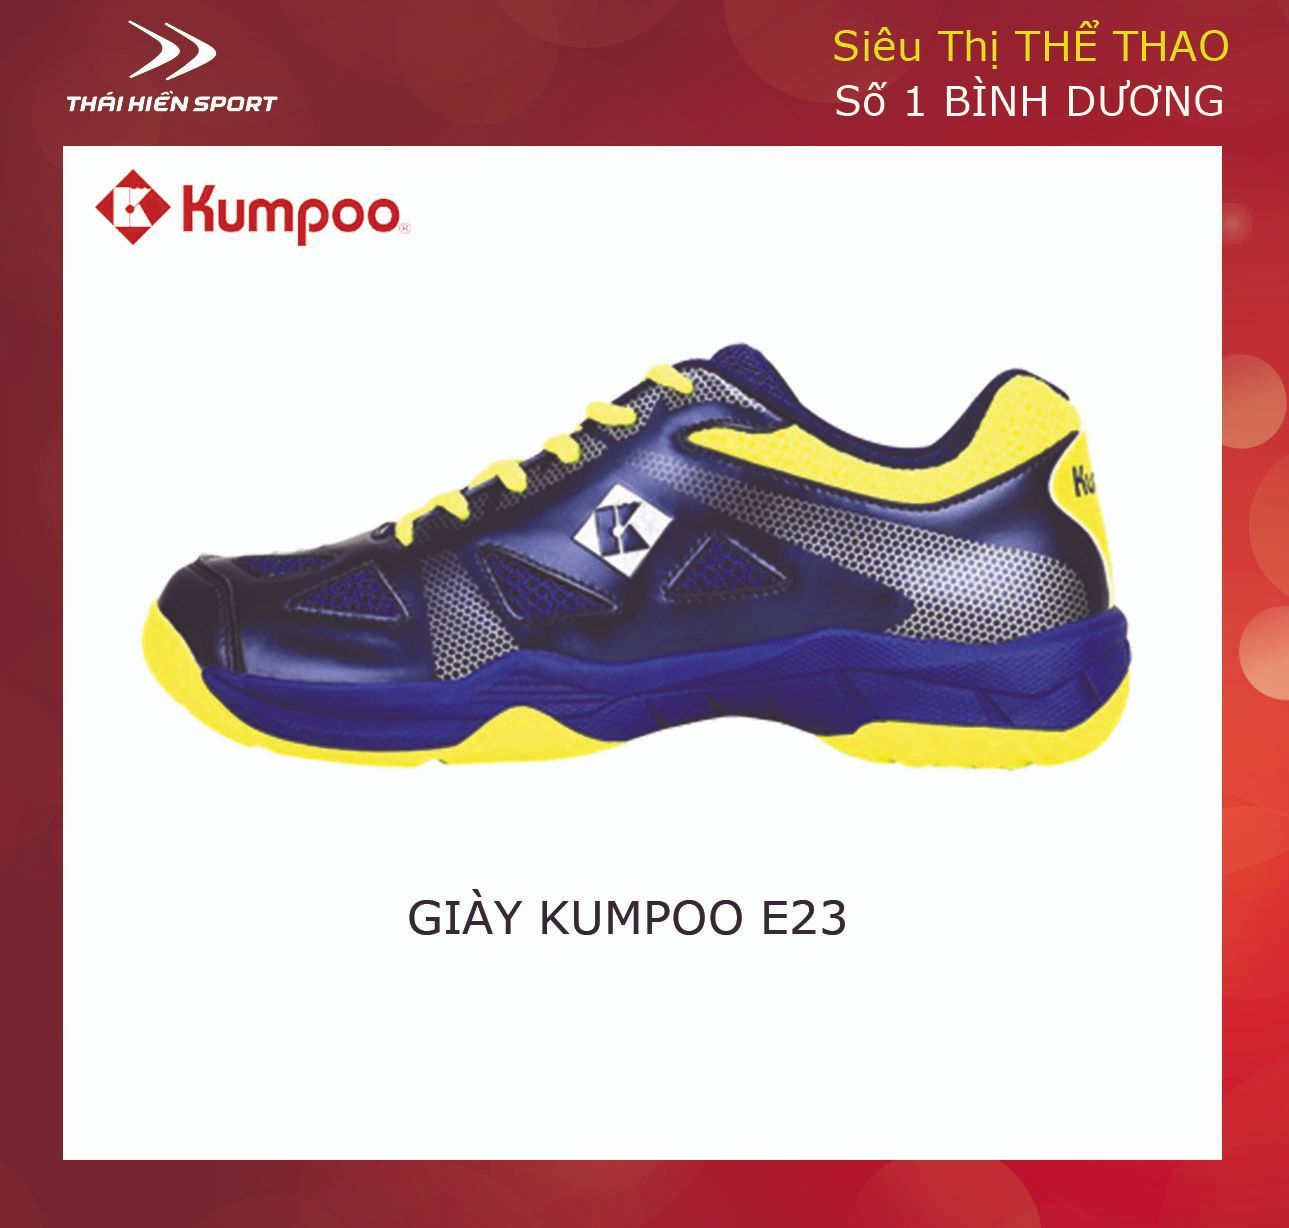  Giày cầu lông Kumpoo E23 xanh tím 